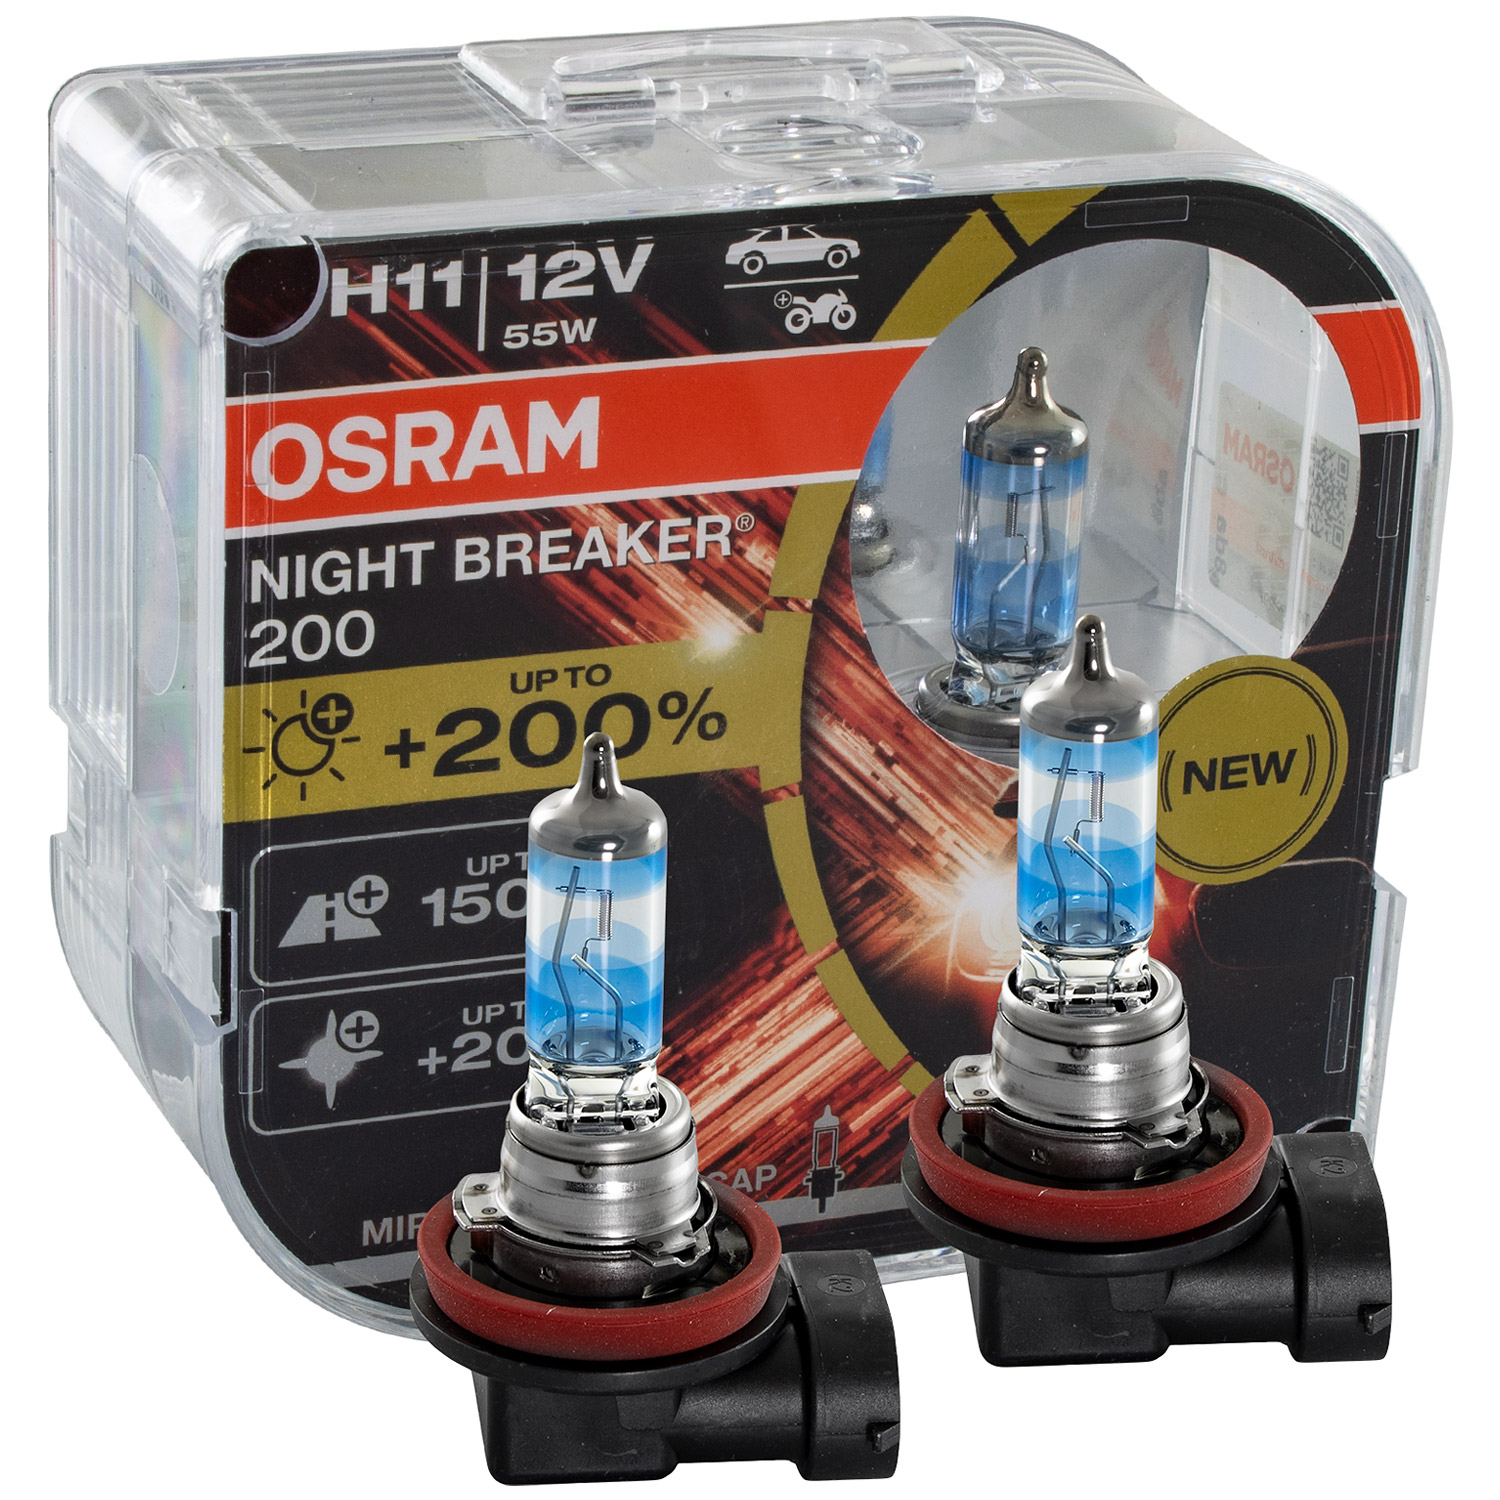 OSRAM H11 NIGHT BREAKER 200 DuoBox bis zu 200% mehr Licht 3600 K